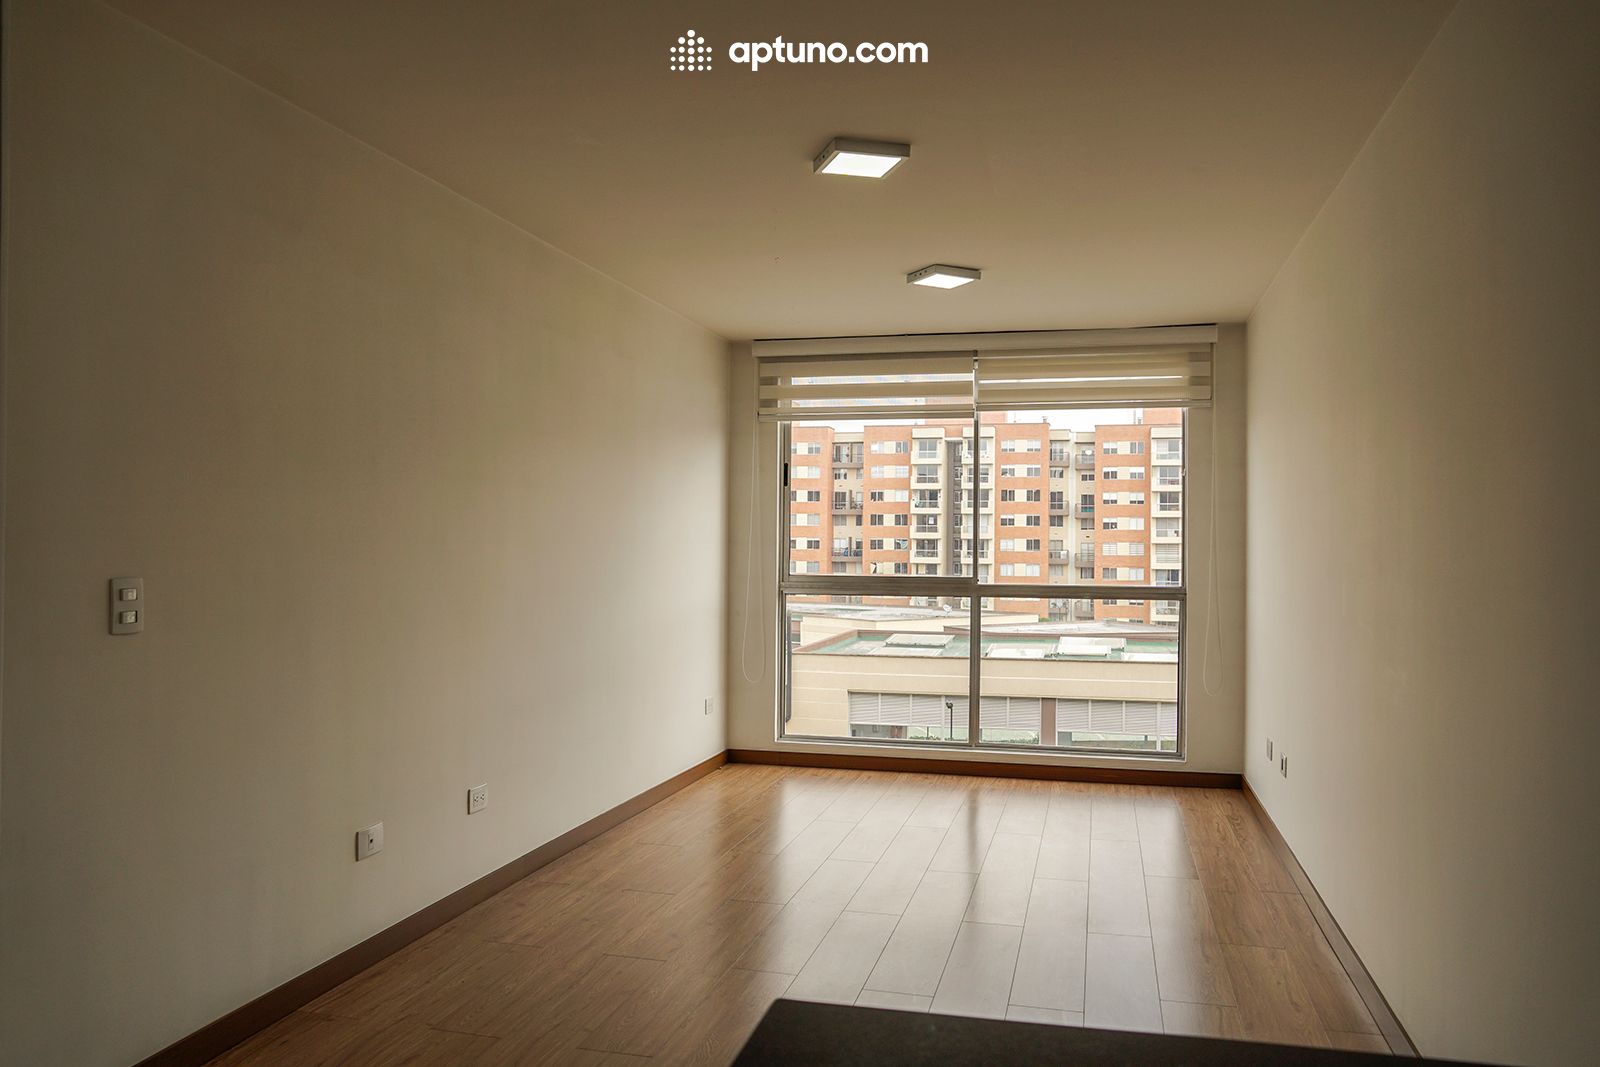 Apartamento en arriendo Mosquera 65 m² - $ 1.400.000,00